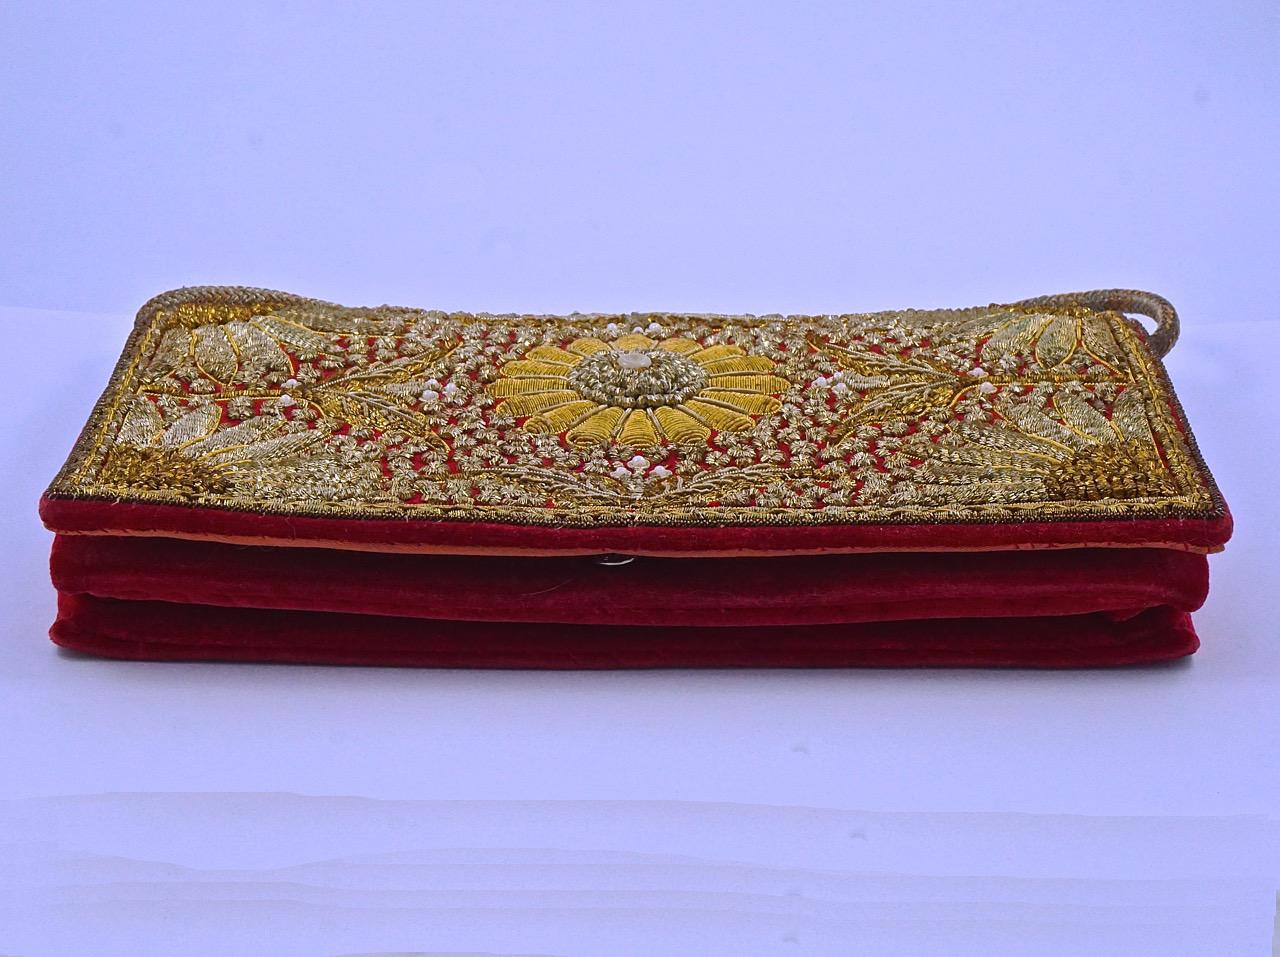 Women's or Men's Zardozi Floral Embroidered Red Velvet Hand Bag circa 1950s